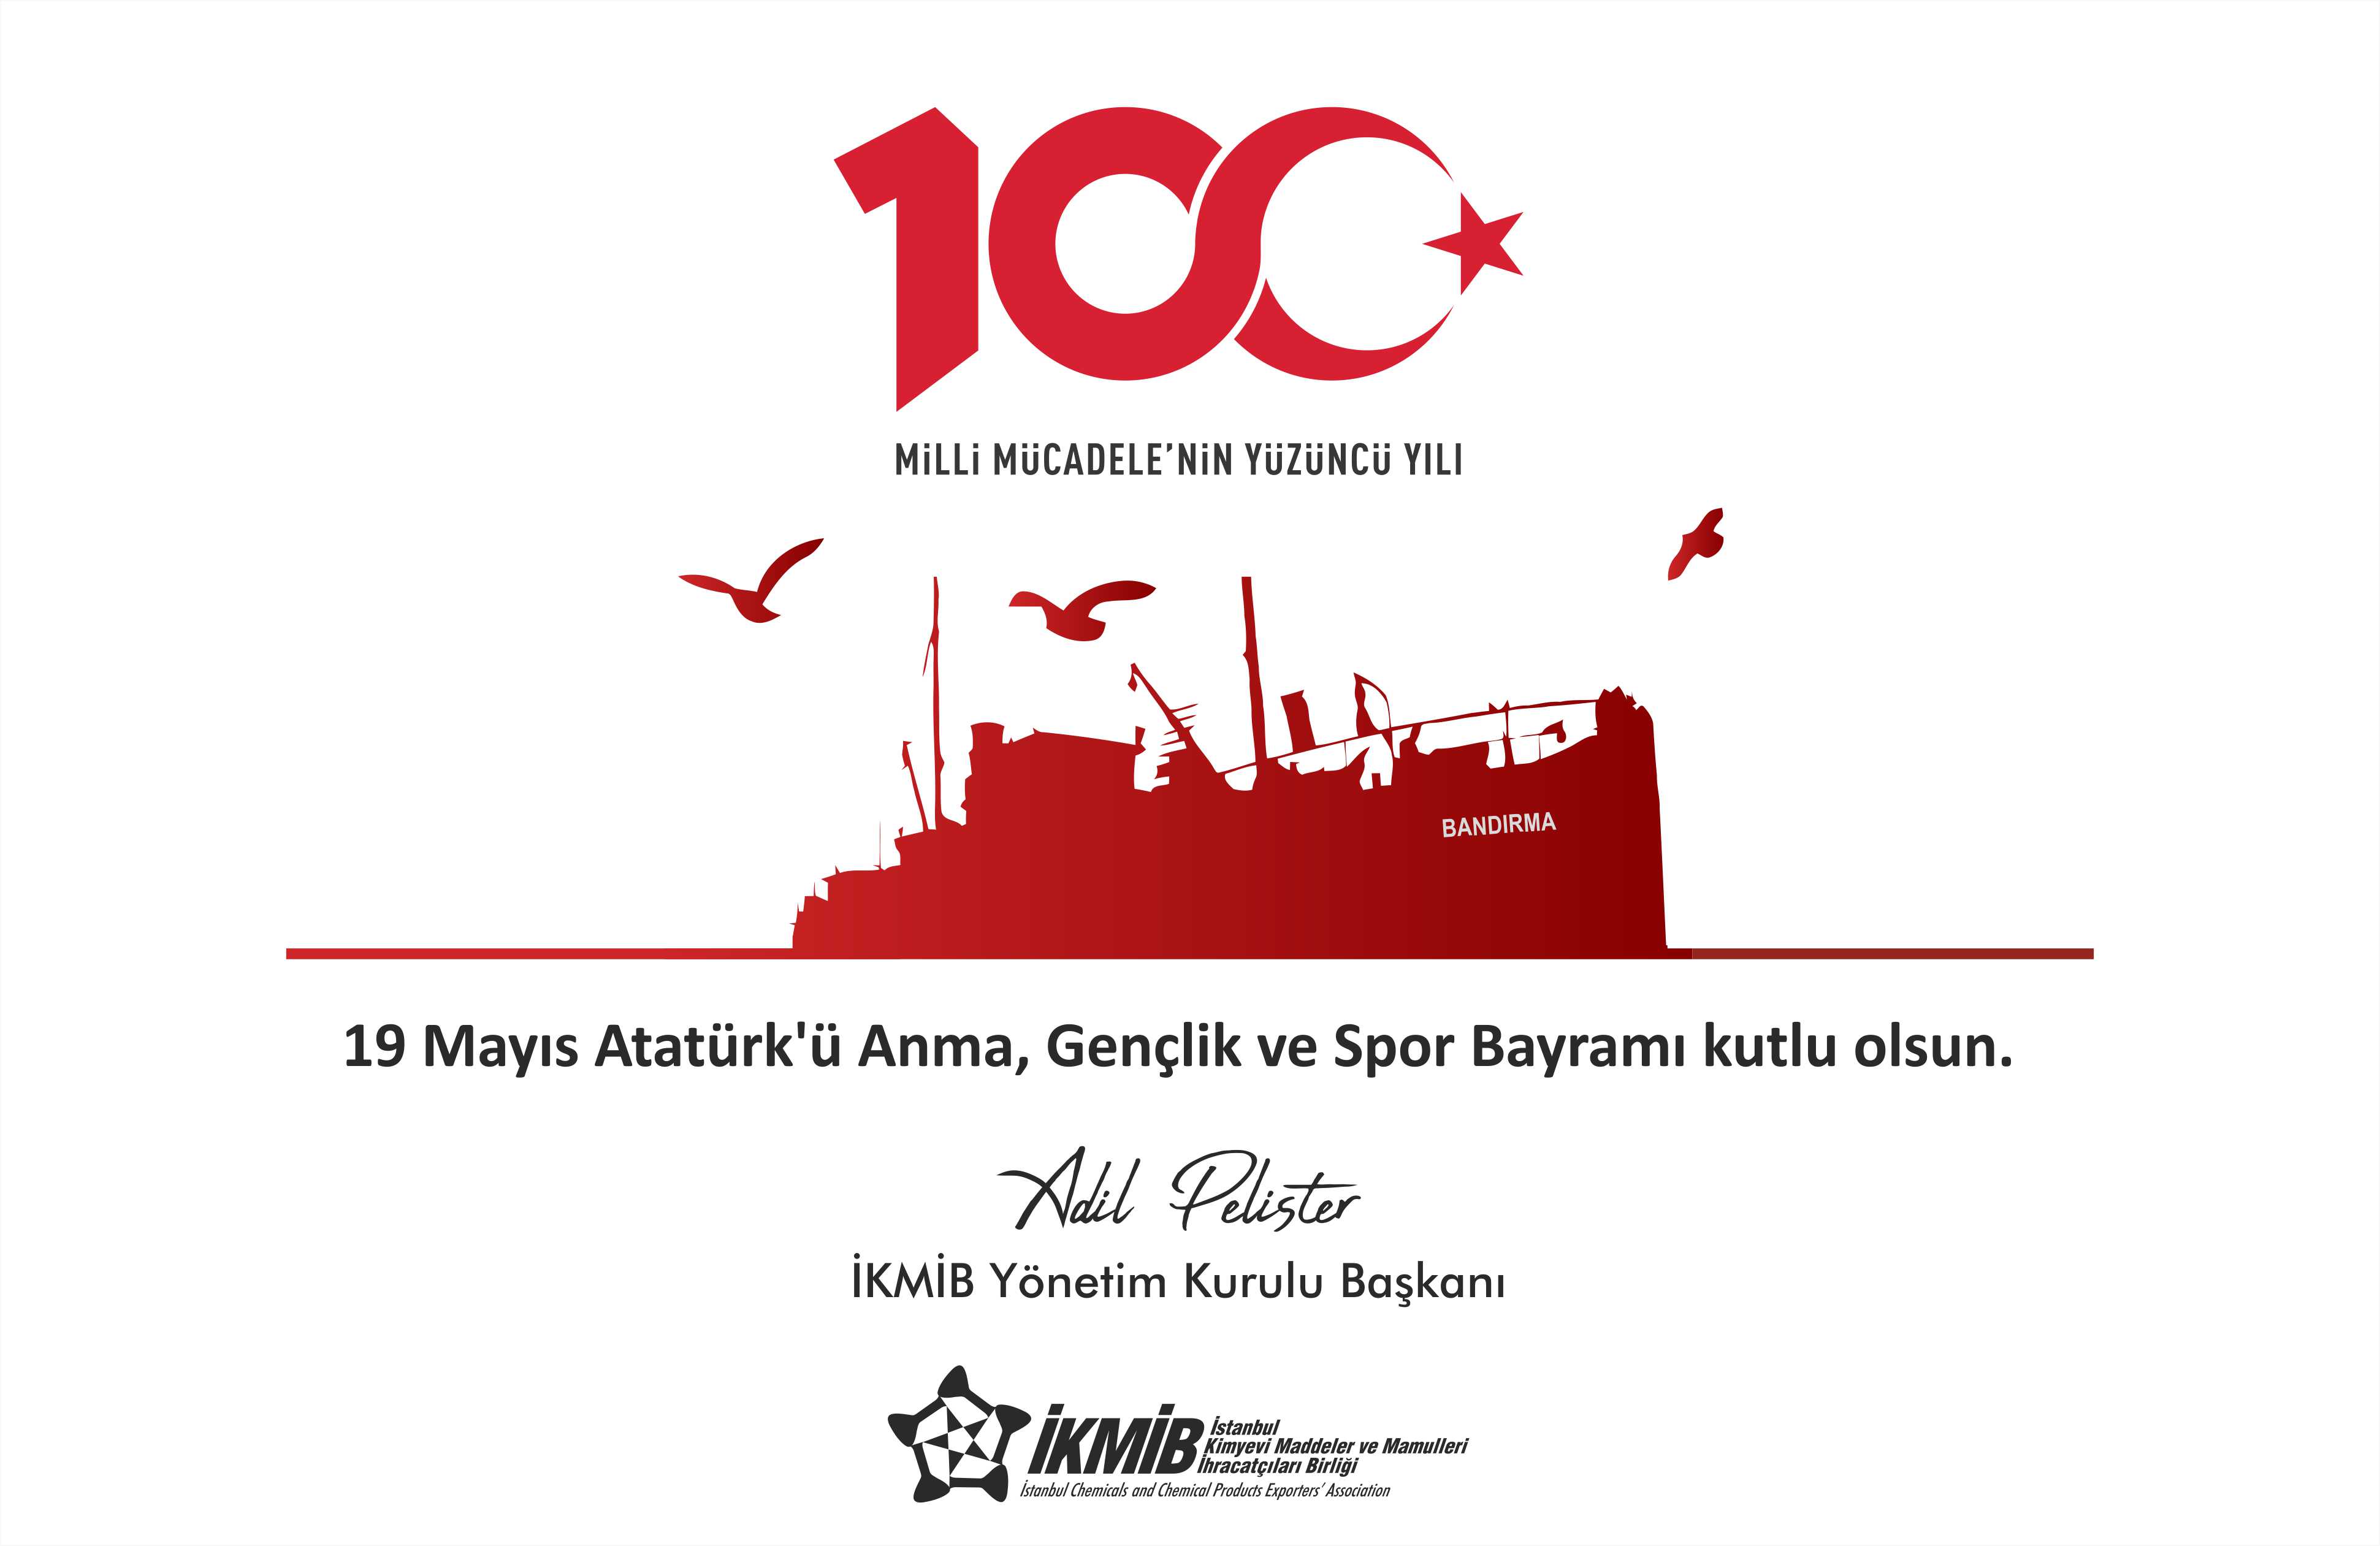 19 Mayıs Atatürk’ü Anma, Gençlik ve Spor Bayramı Tebriği